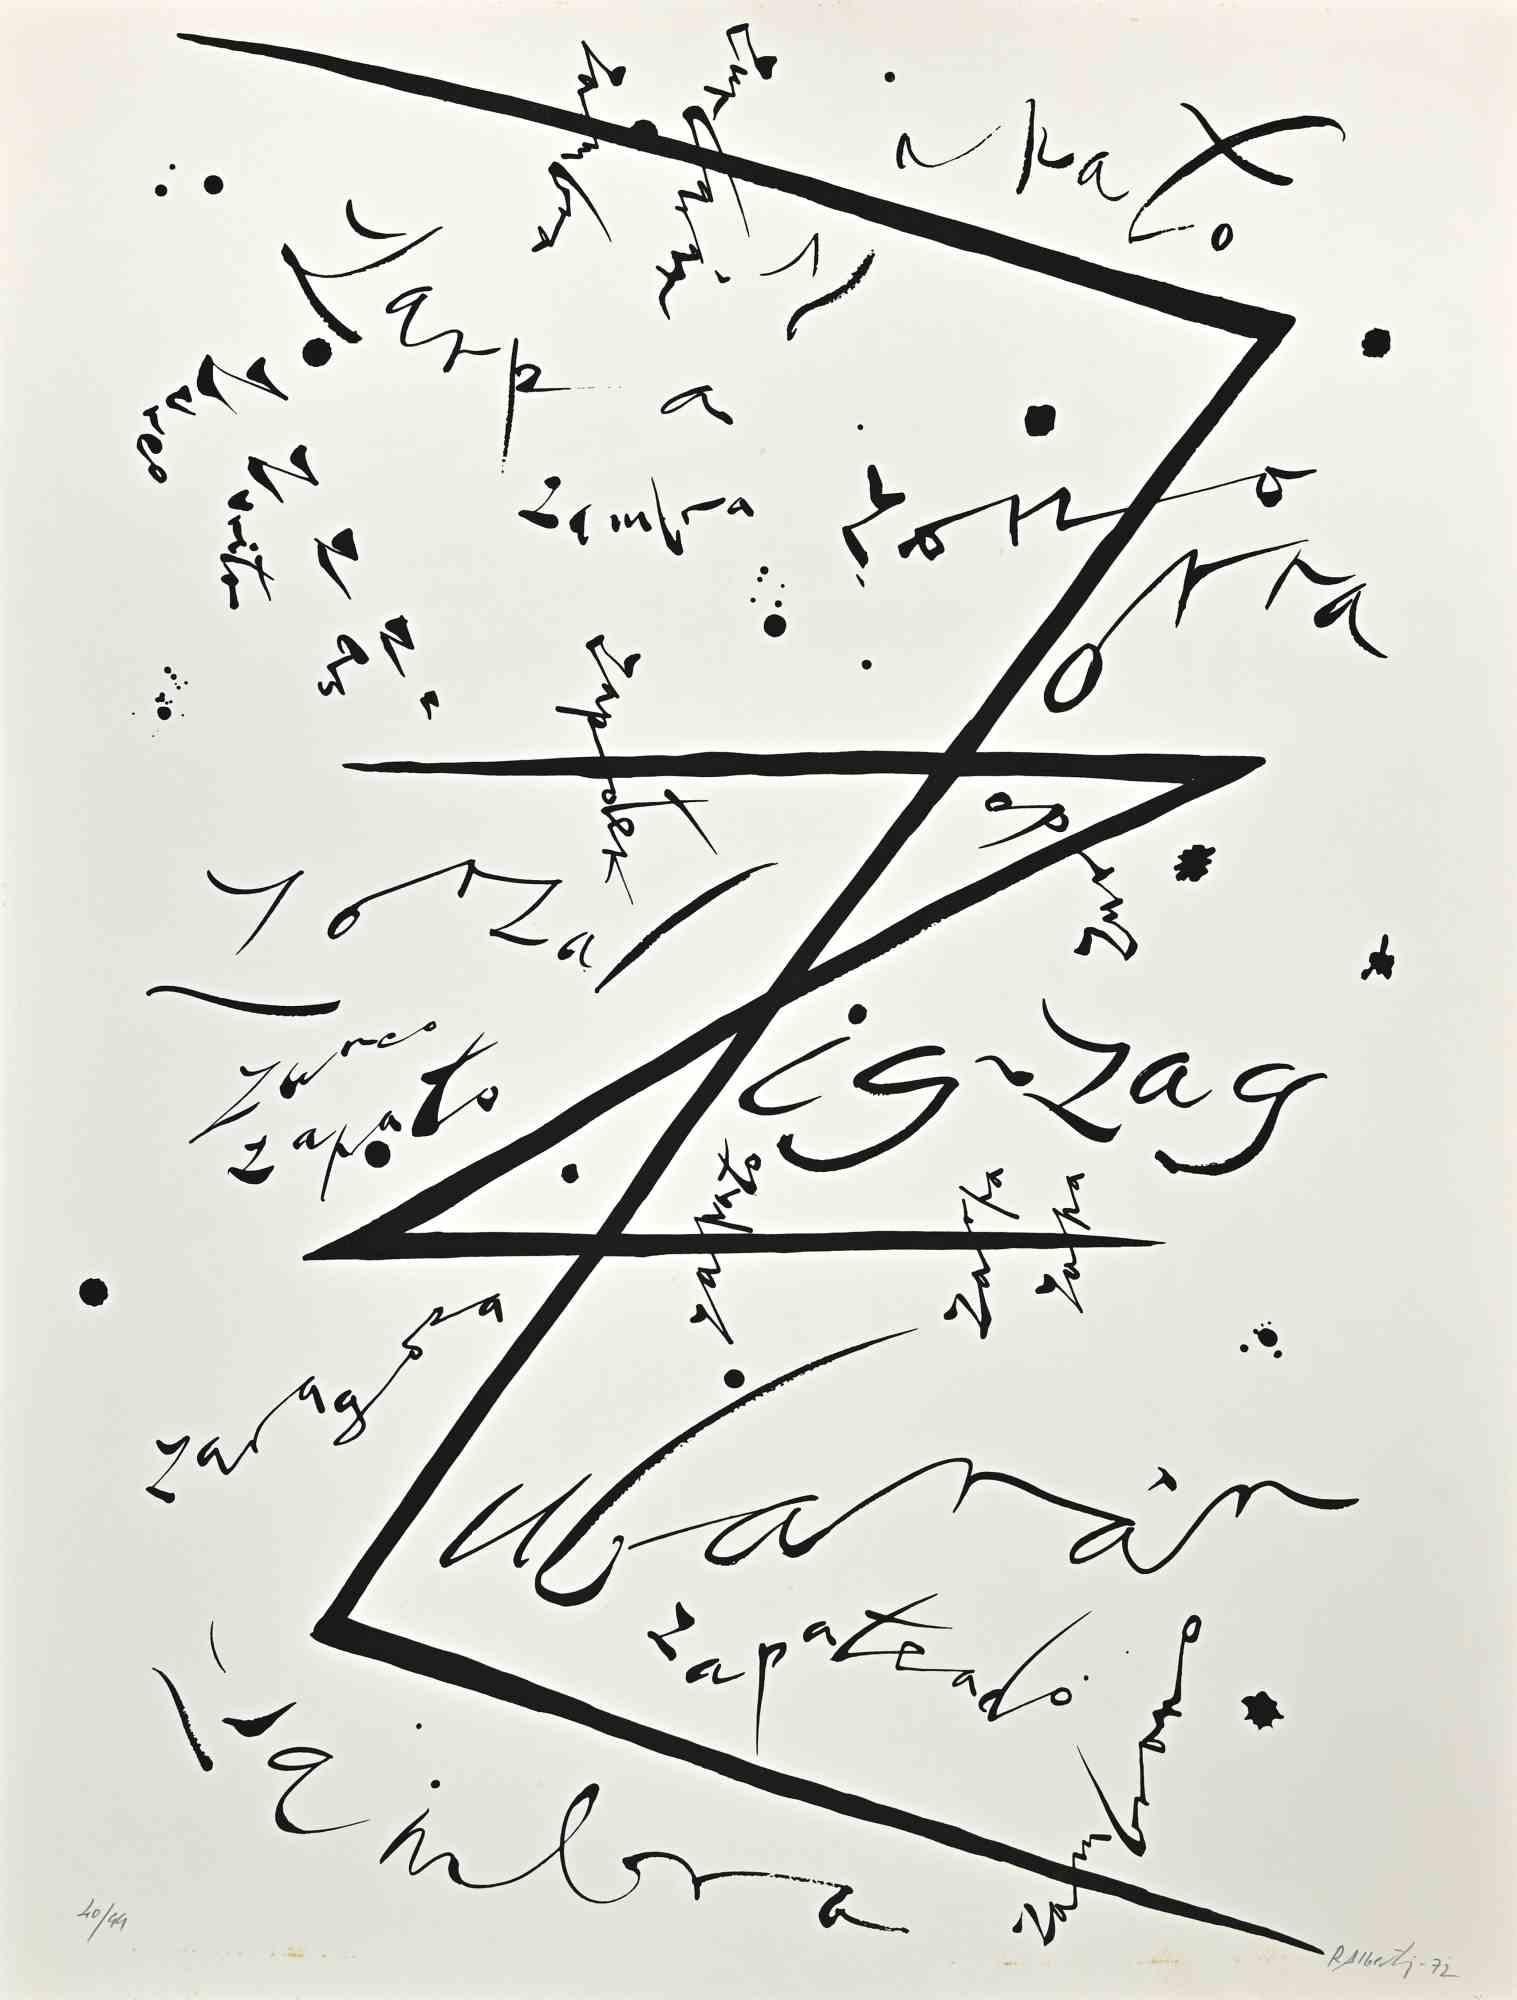 Lettre Z   de la série Alphabet est une lithographie originale réalisée par Rafael Alberti en 1972.

Signé et daté à la main dans la marge inférieure.

Numéroté dans la marge inférieure. Edition 40/44

Bon état, sauf quelques taches.

L'œuvre